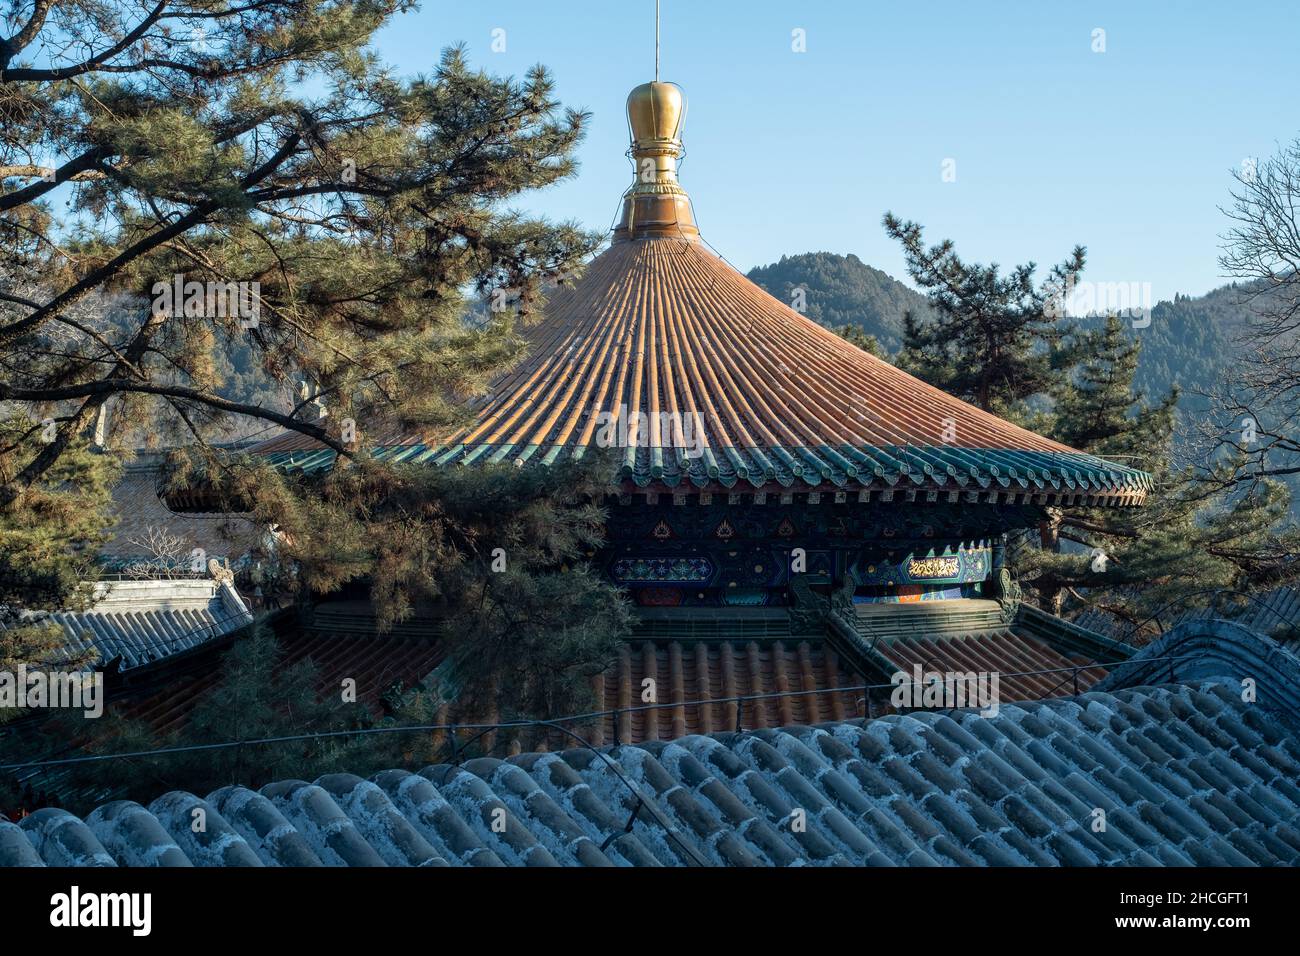 Altare di Lengyan nel Tempio di Tanzhe. Il Tempio Tanzhe è un tempio buddista situato nelle colline occidentali, una zona montagnosa nella Pechino occidentale, Cina. Foto Stock